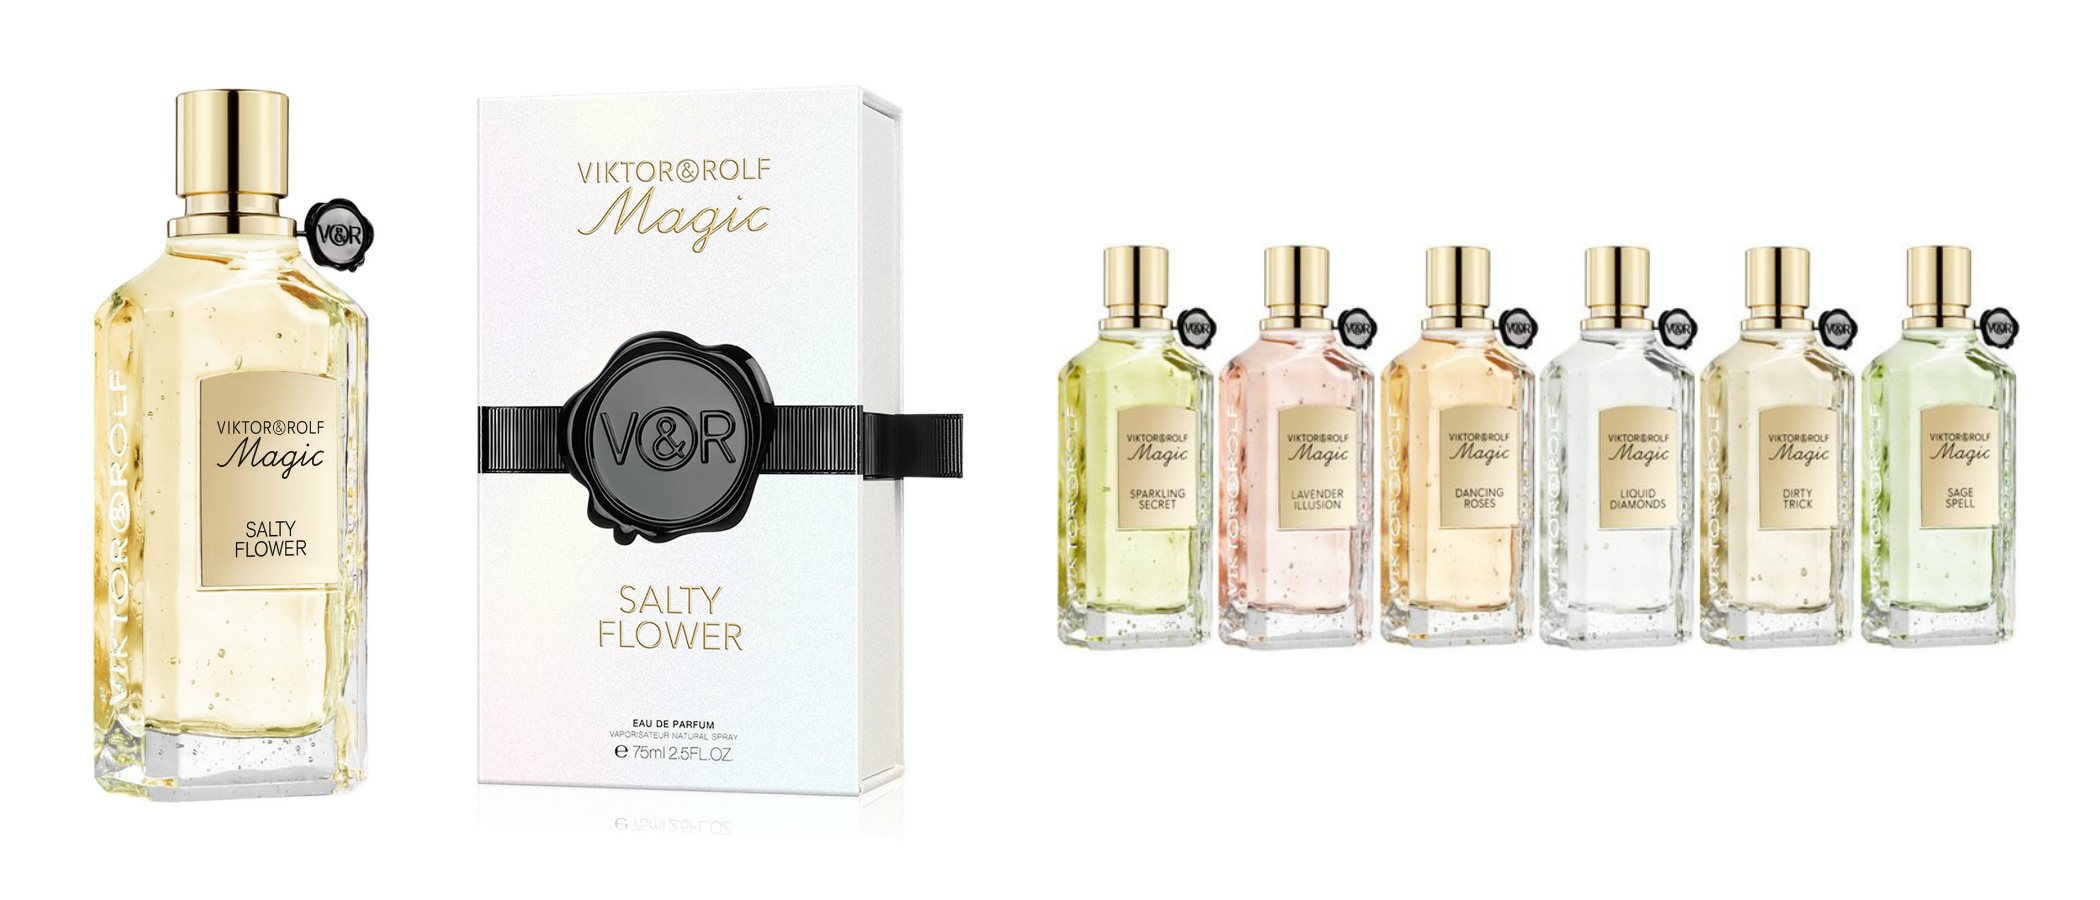 Viktor & Rolf lanza 'Salty Flower', la nueva fragancia de su 'Magic Collection'